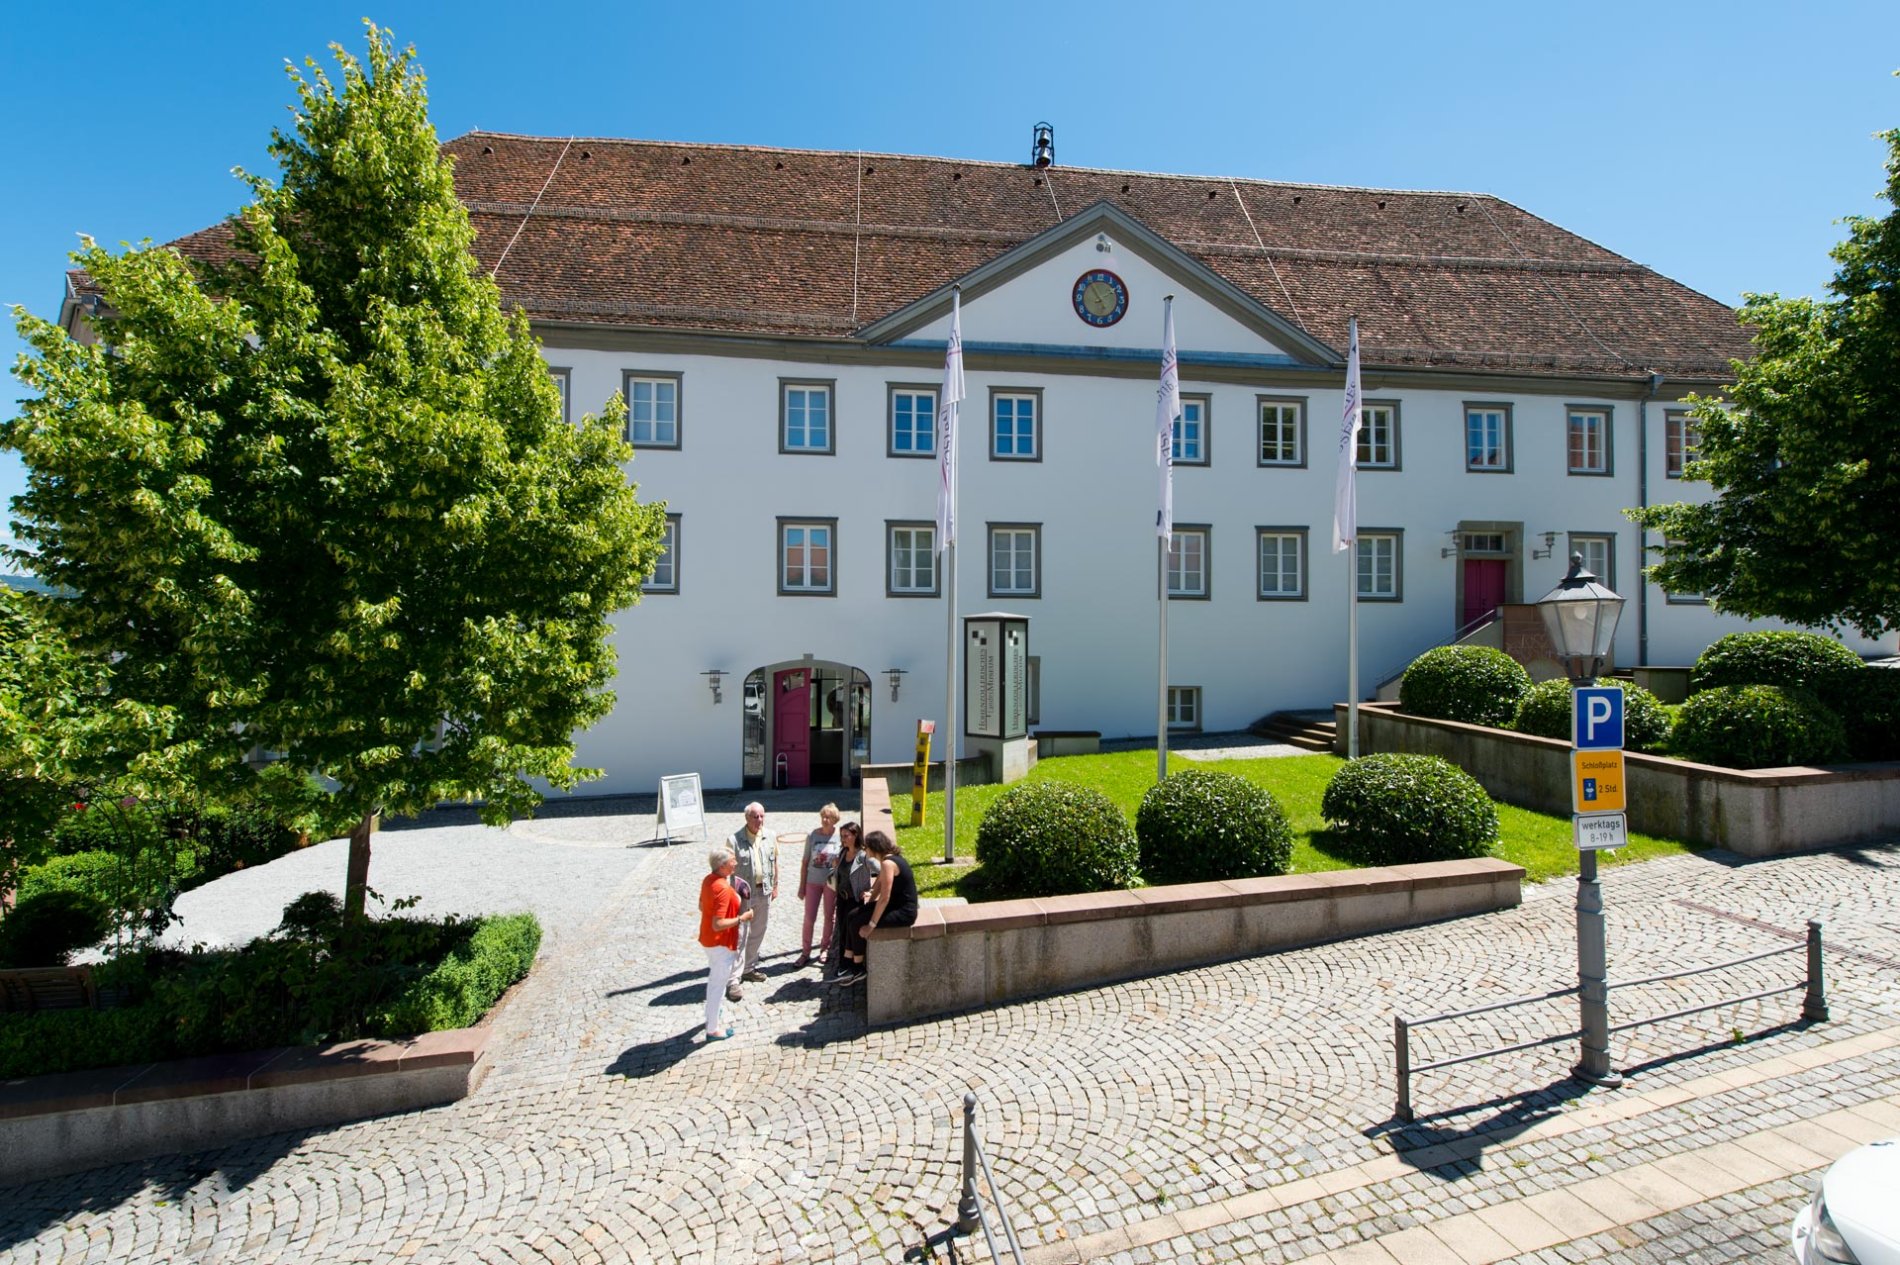 Hohenzollerisches Landesmuseum im Alten Schloss in Hechingen